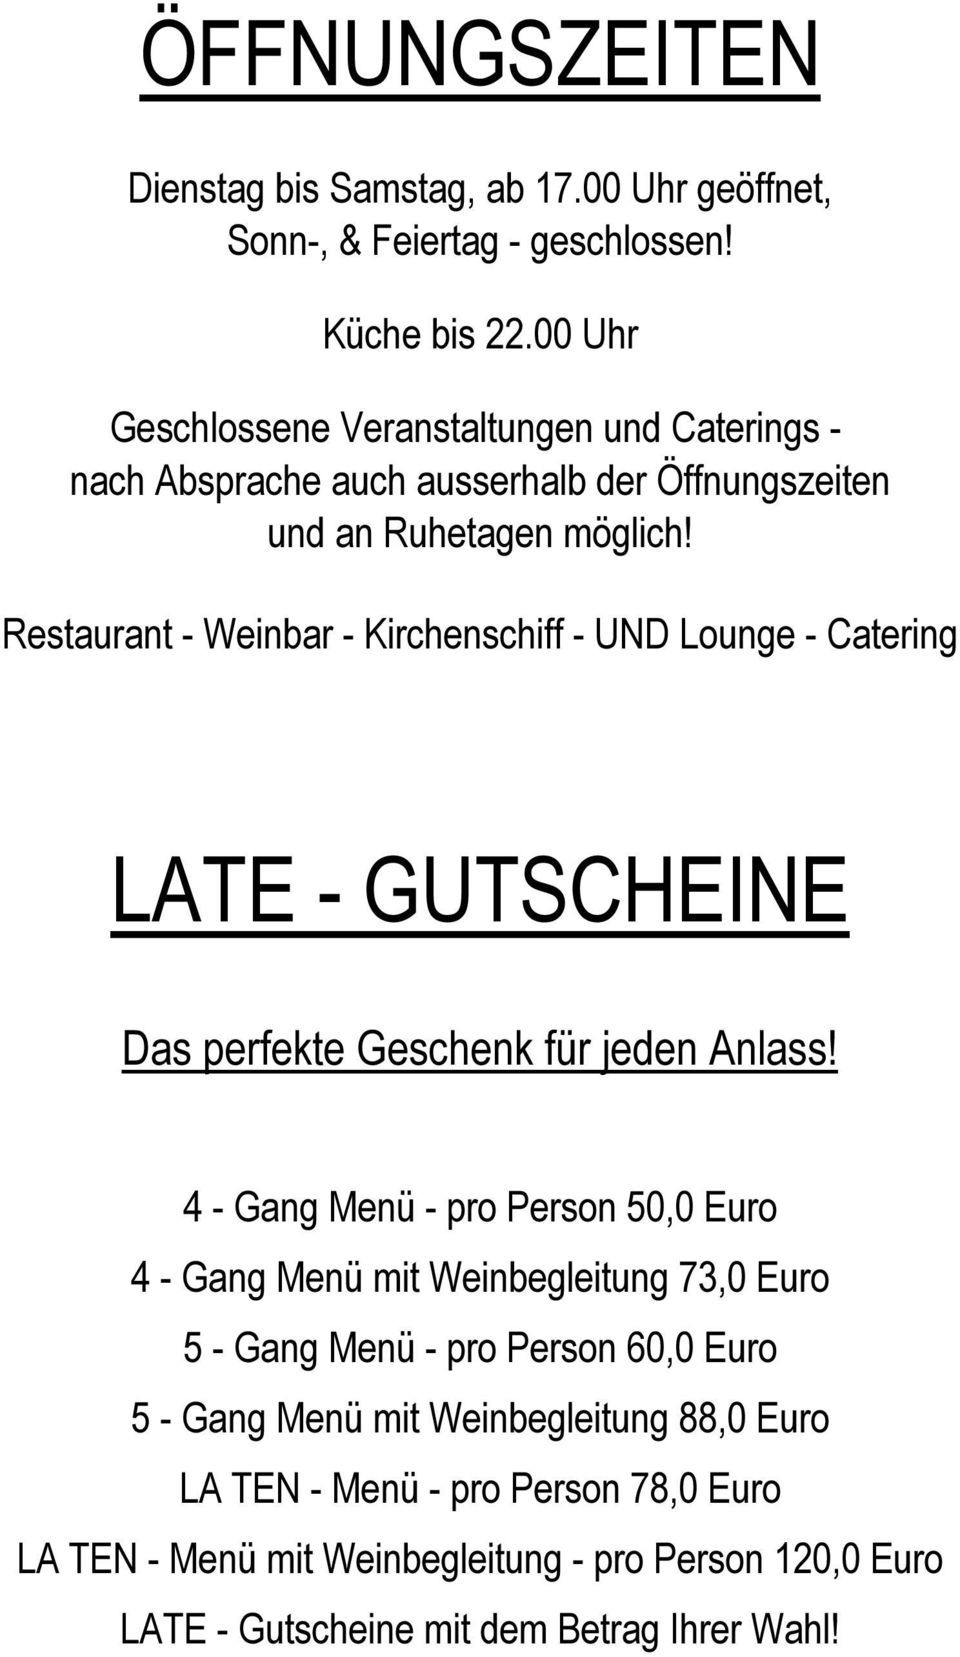 Restaurant - Weinbar - Kirchenschiff - UND Lounge - Catering LATE - GUTSCHEINE Das perfekte Geschenk für jeden Anlass!